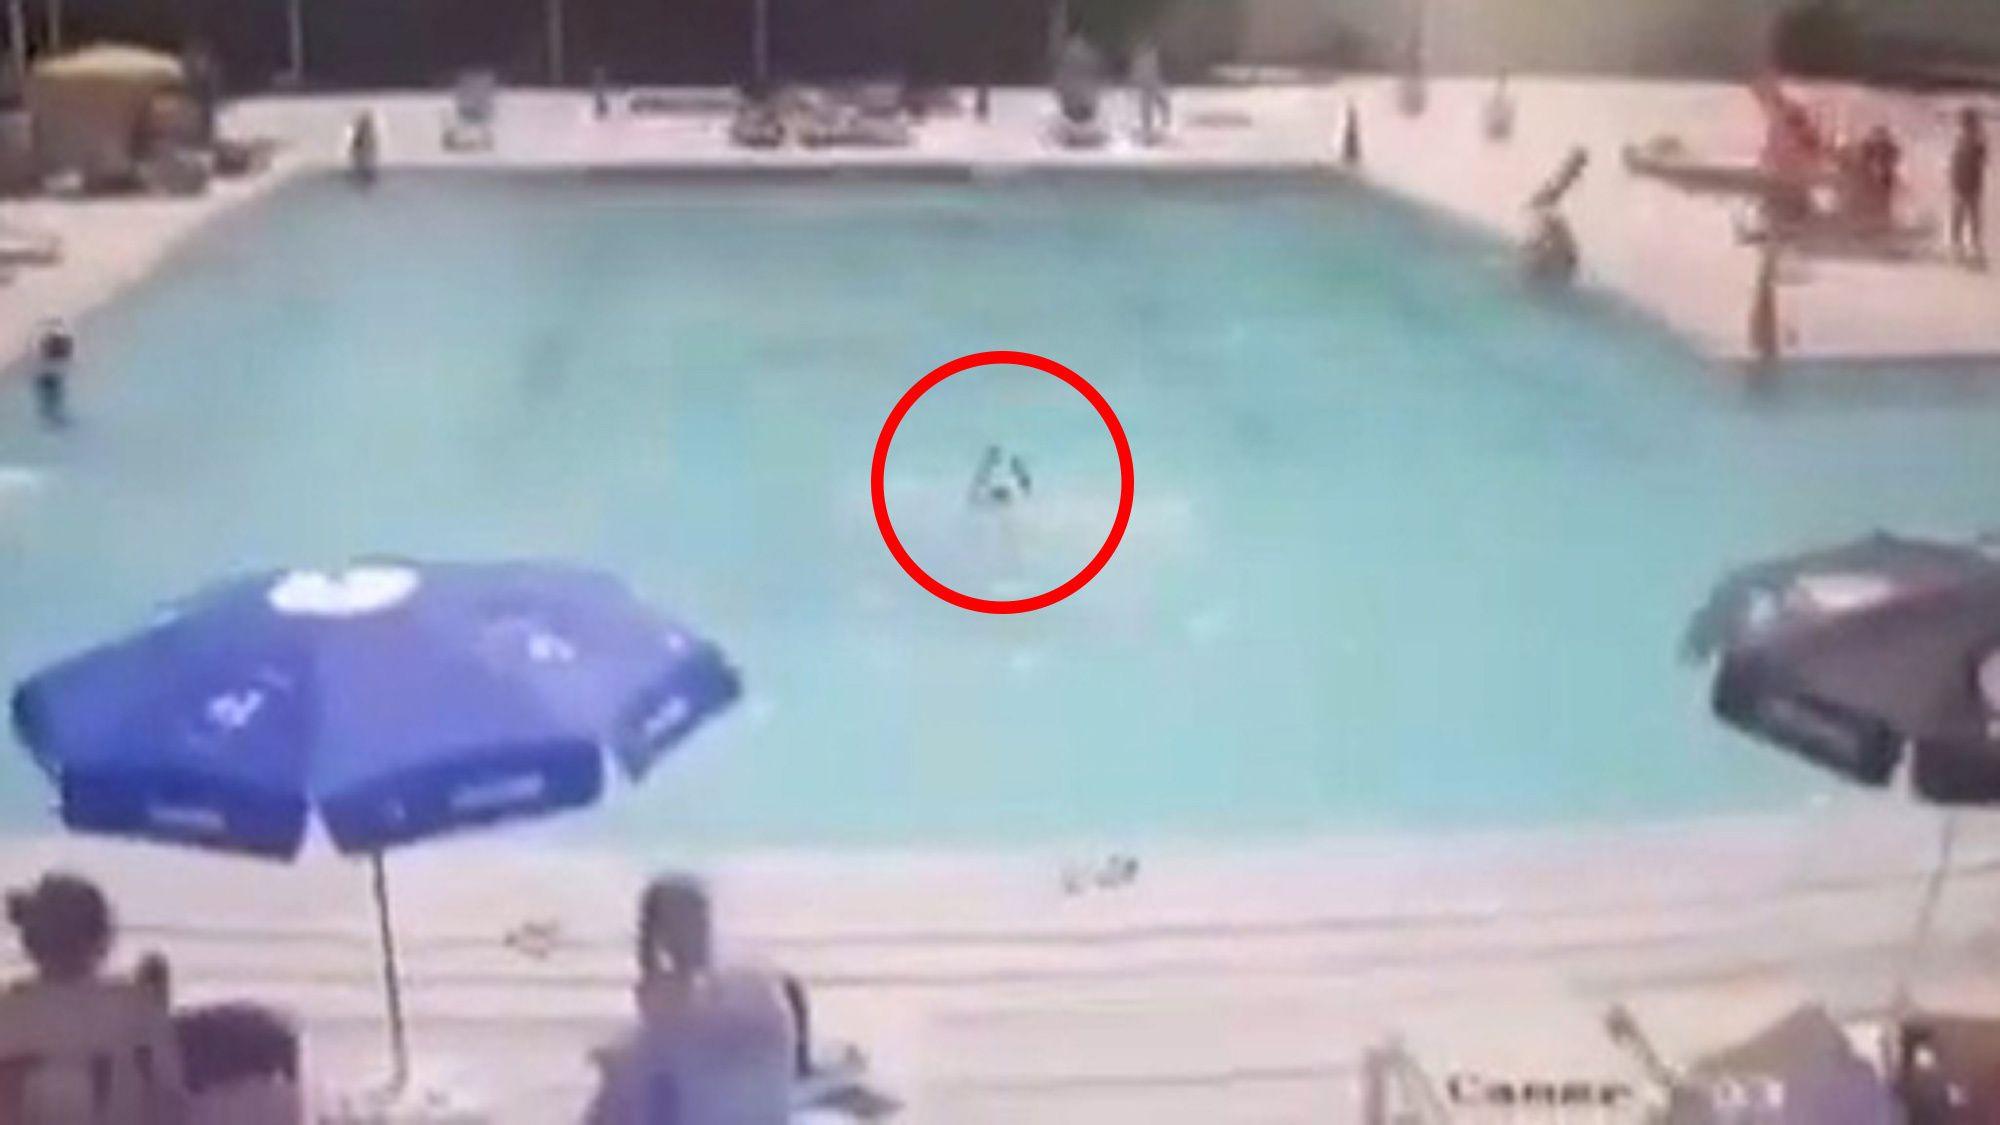 Un băieţel a murit înecat în piscină, în faţa părinţilor care nu i-au văzut semnele disperate după ajutor